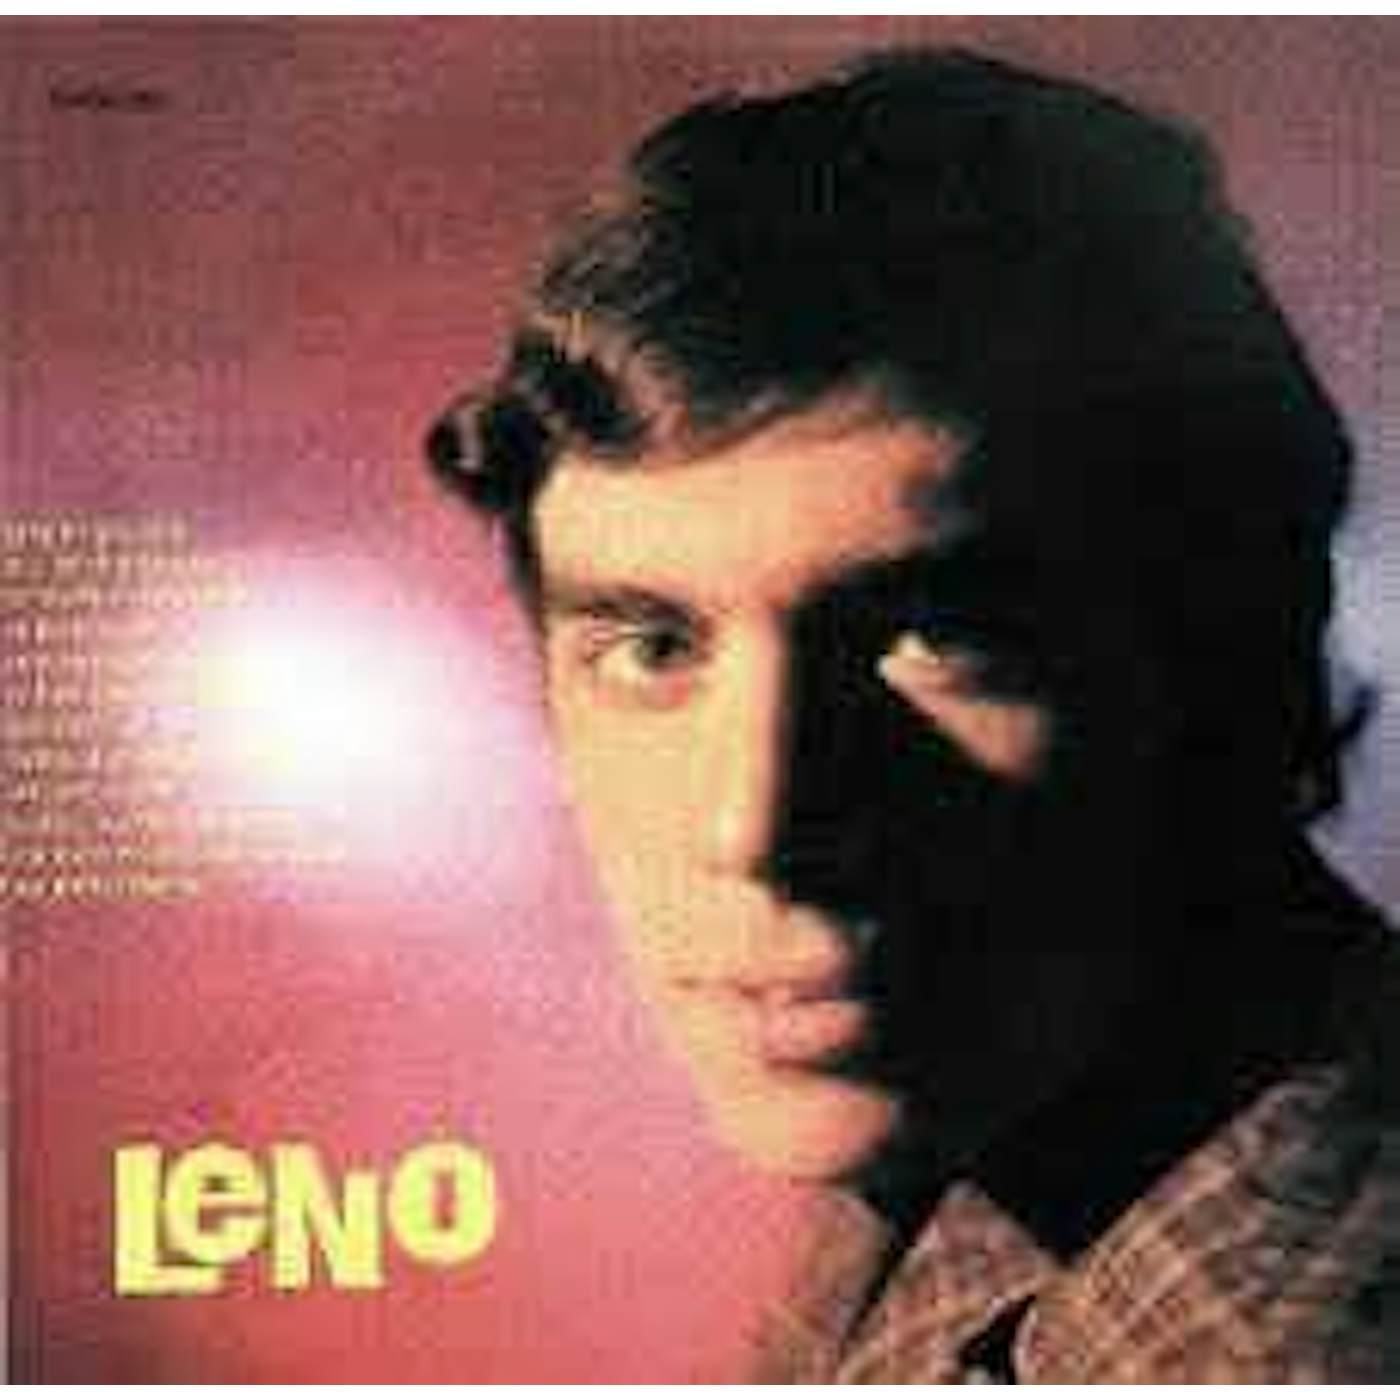 Leño Vinyl Record